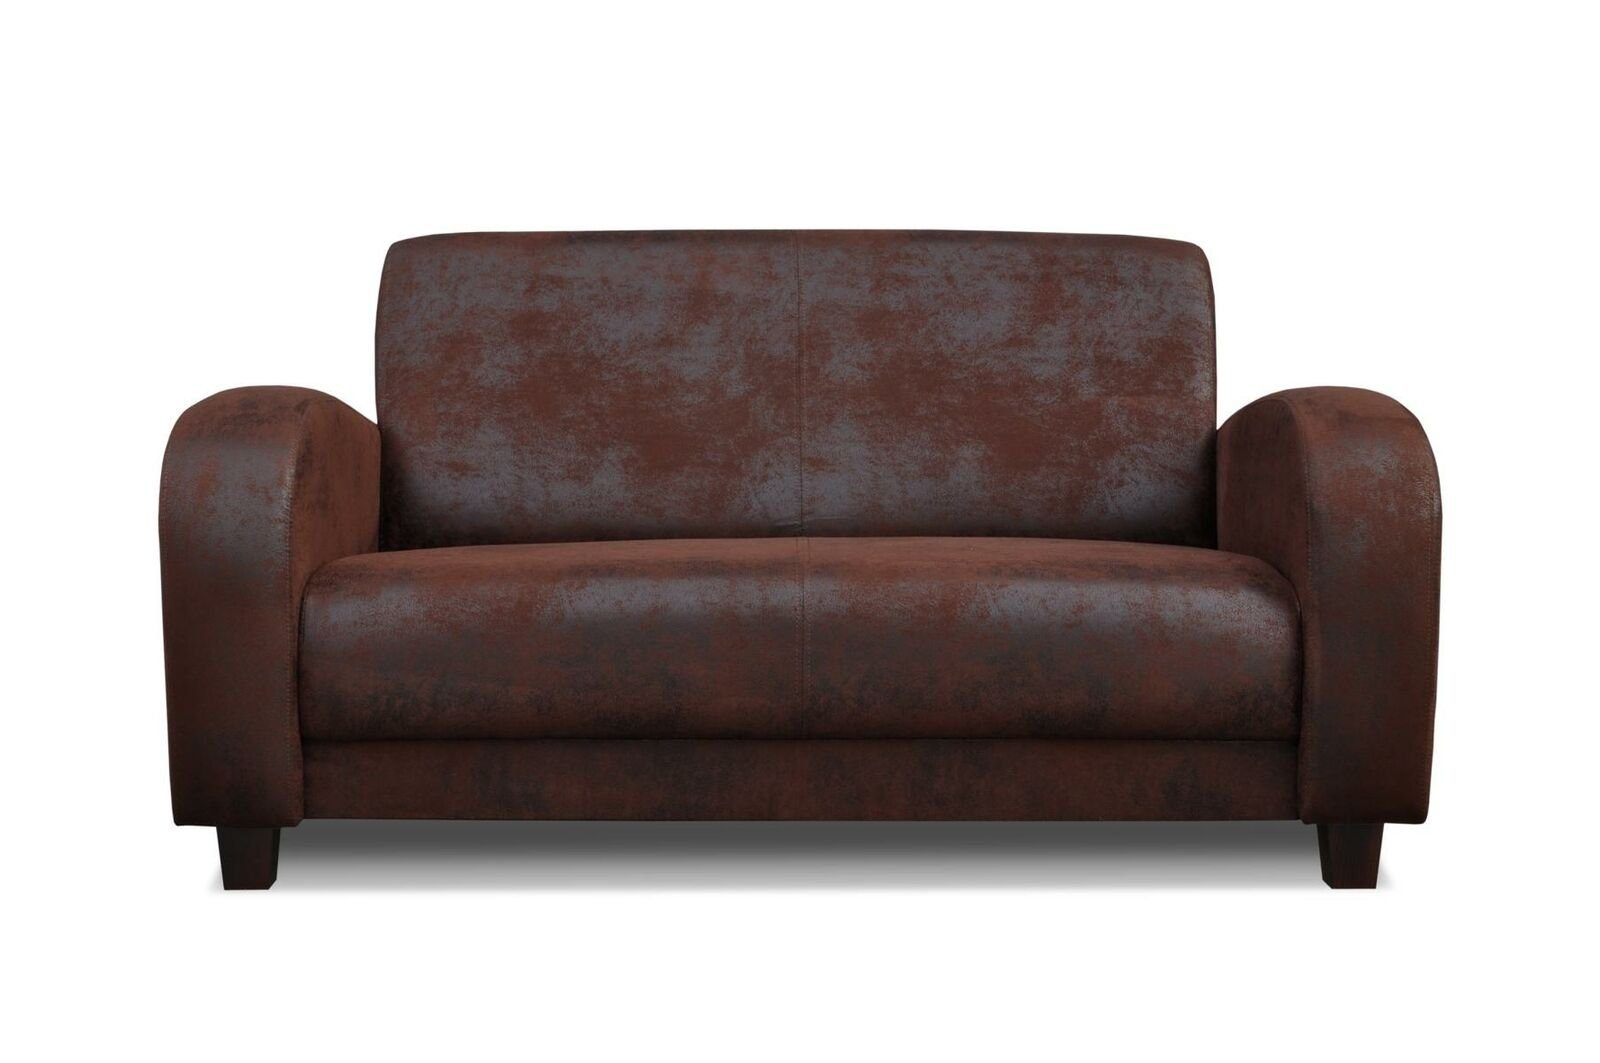 JVmoebel Sofa Vintages Ledersofa Set Made Couch Set Polstermöbel Neu, 3+2+1 in Europe Sitzer